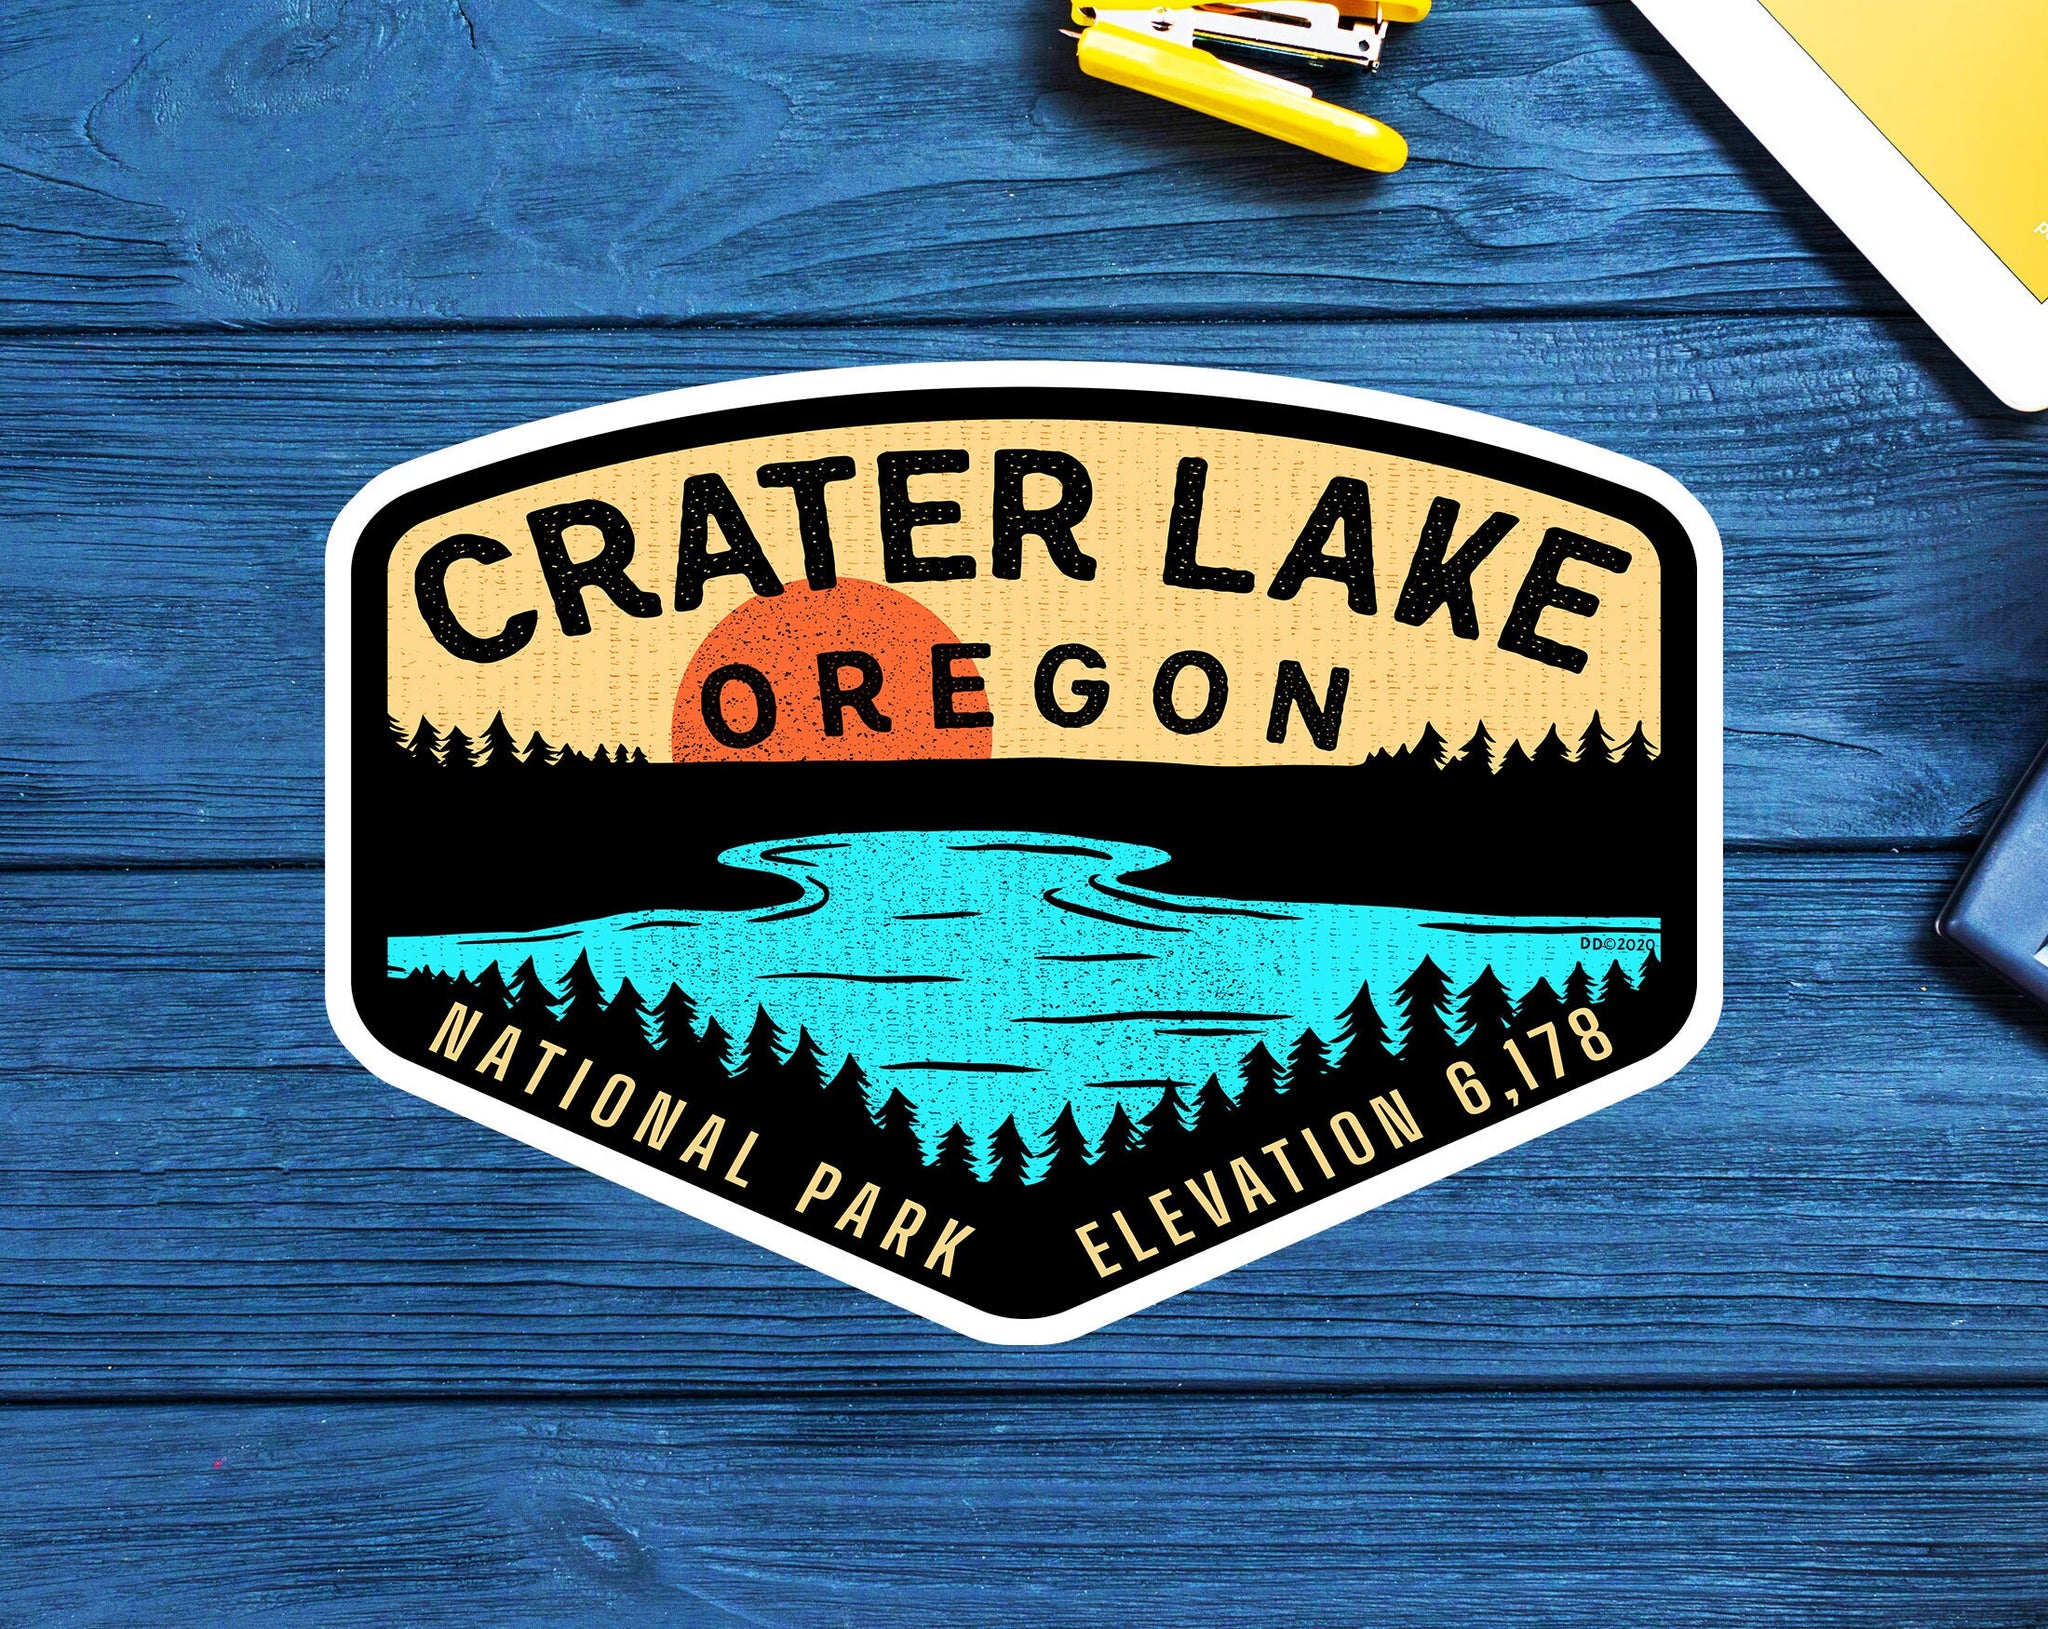 Crater Lake Oregon Sticker Decal 3.75" Vinyl Indoor Outdoor Laptop Car Truck Van